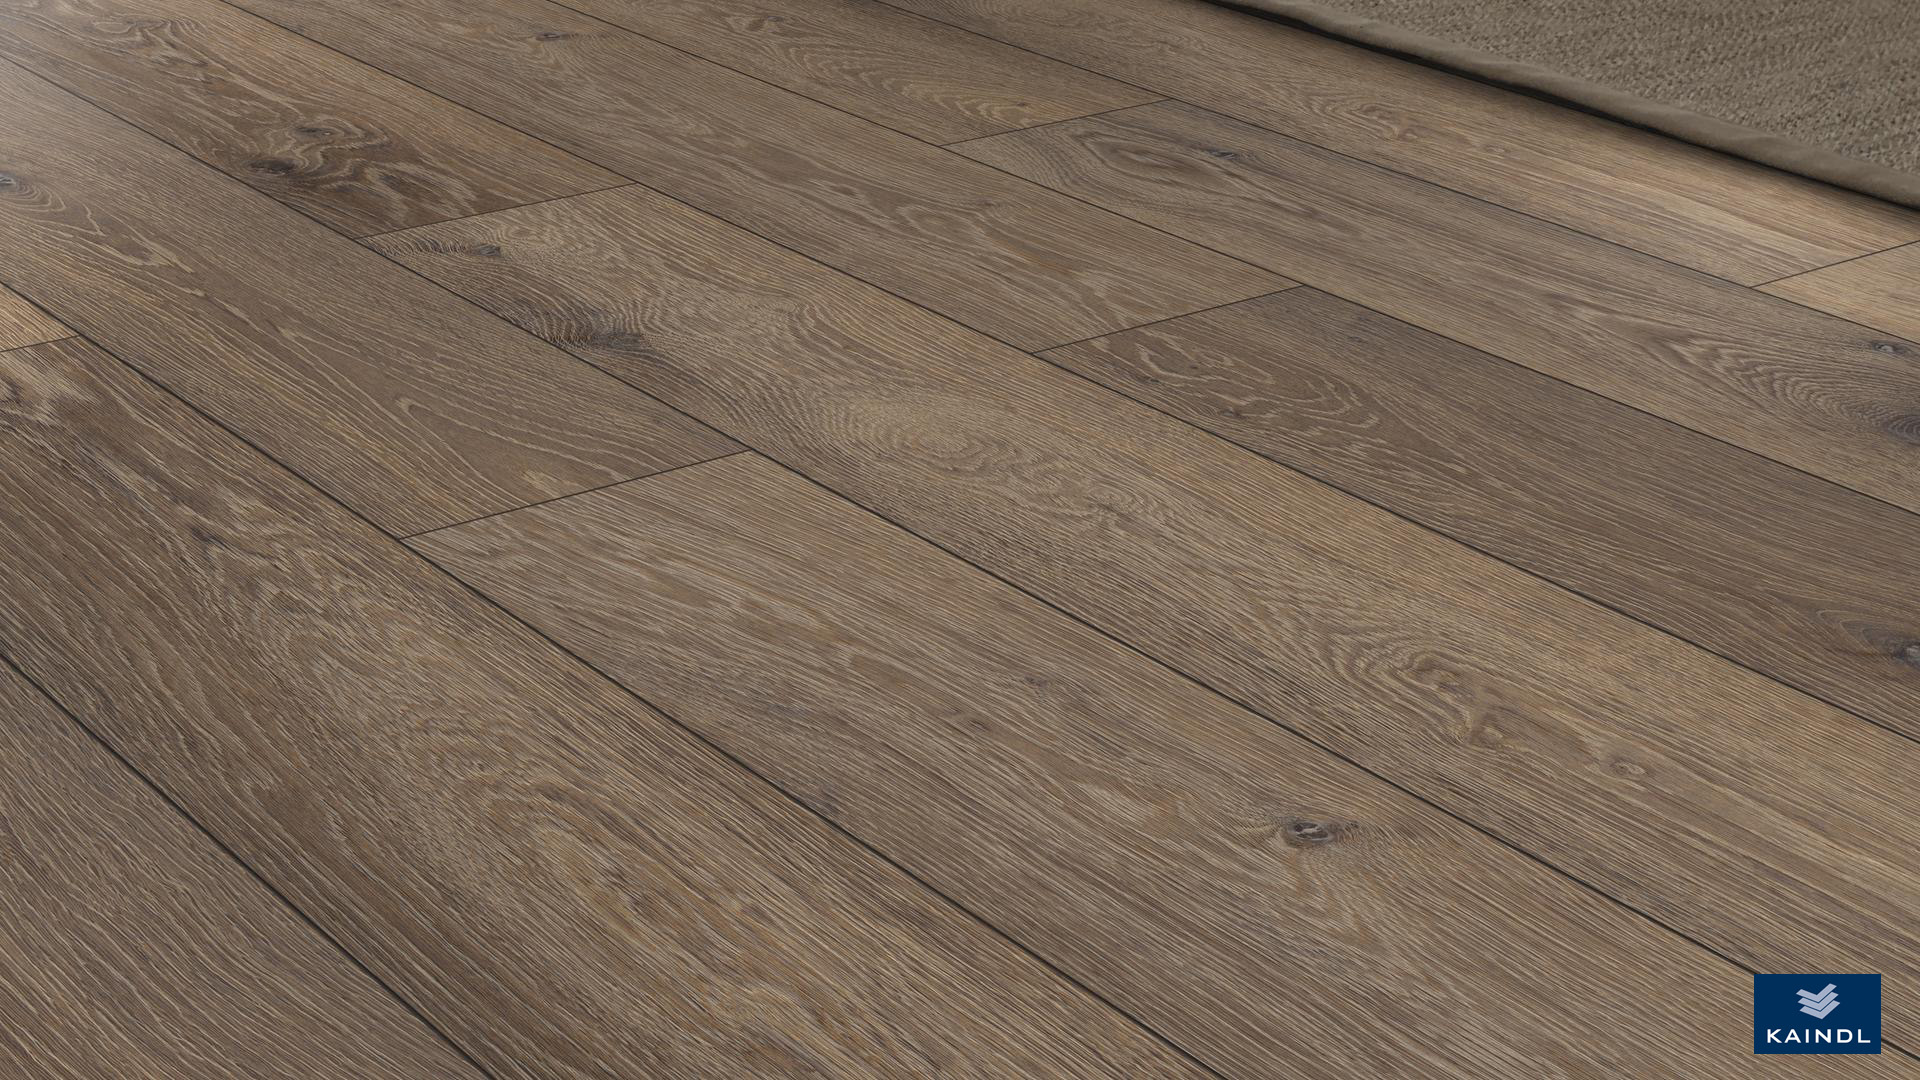 sàn gỗ công nghiệp kaindl cao cấp sồi